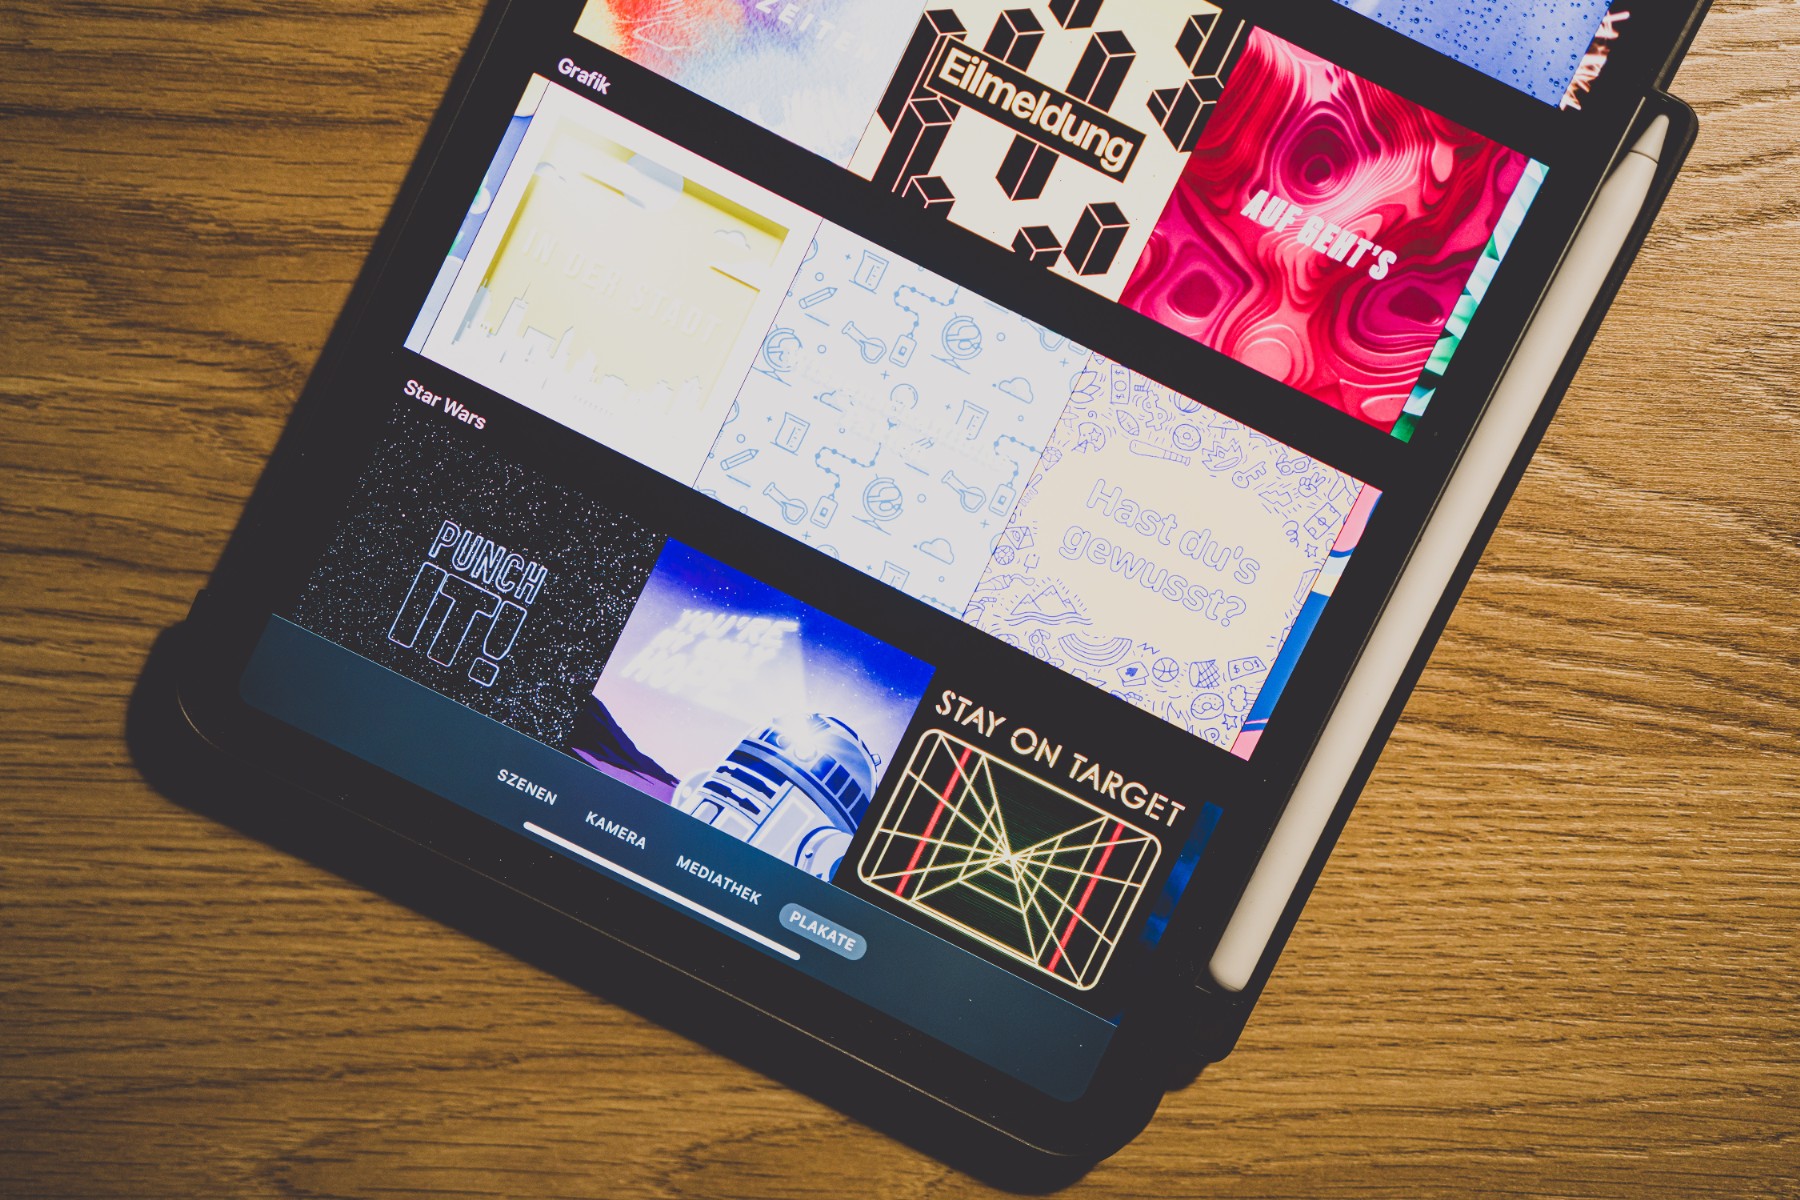 Das iPad als Unterrichtswerkzeug im Fach Kunst